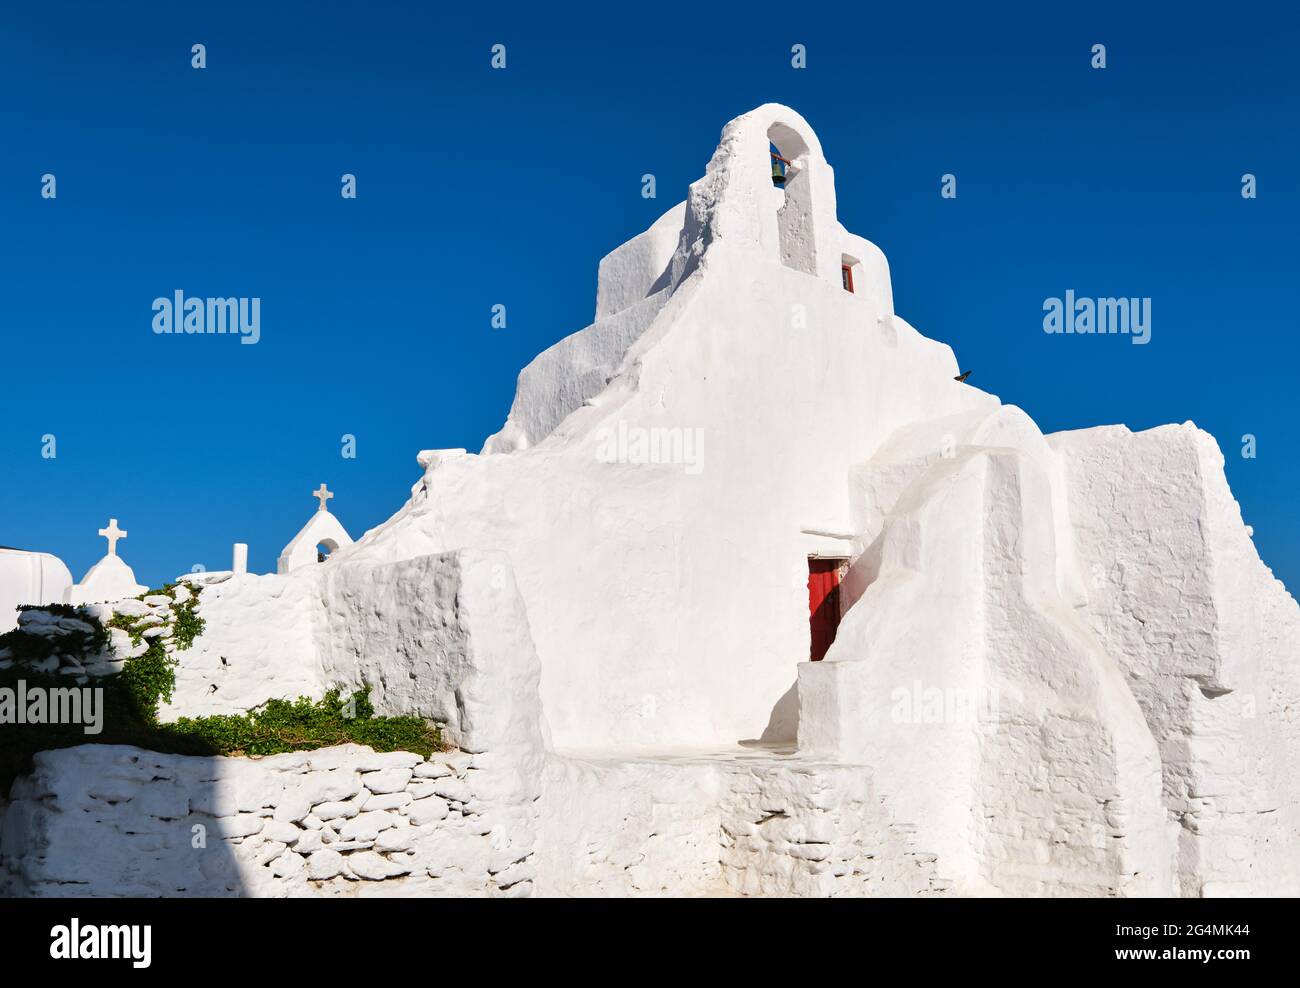 Ikonisches Touristendenkmal, Mykonos, Griechenland. Weiße griechisch-orthodoxe Kirche von Panagia Paraportiani, Stadt Chora auf der Insel bei Sonnenaufgang. Legendäres Reiseziel Stockfoto